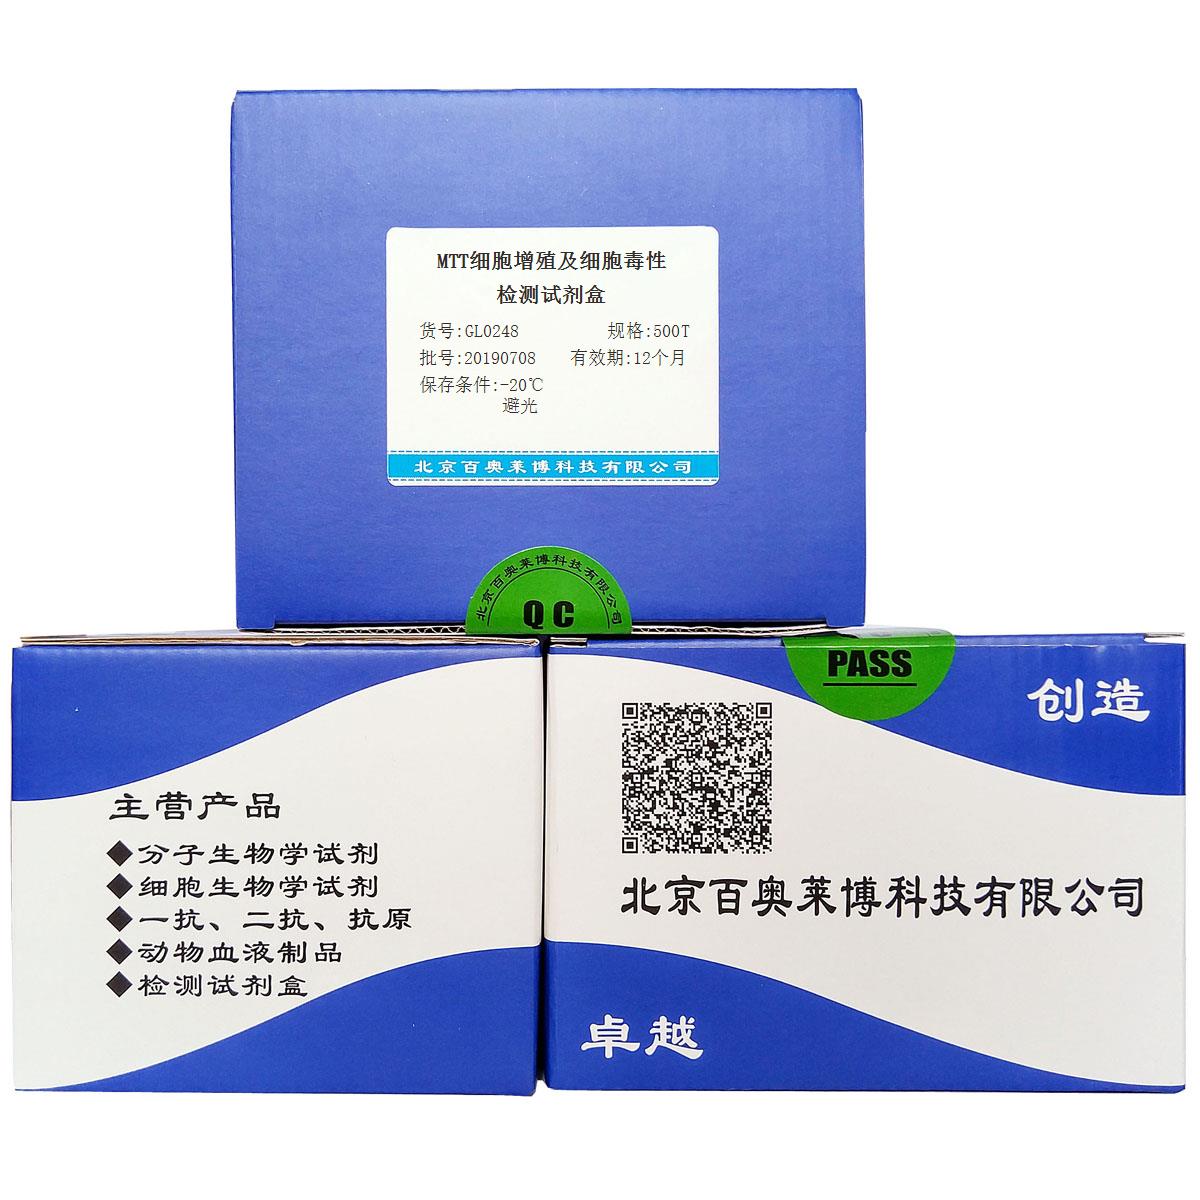 MTT细胞增殖及细胞毒性检测试剂盒北京品牌